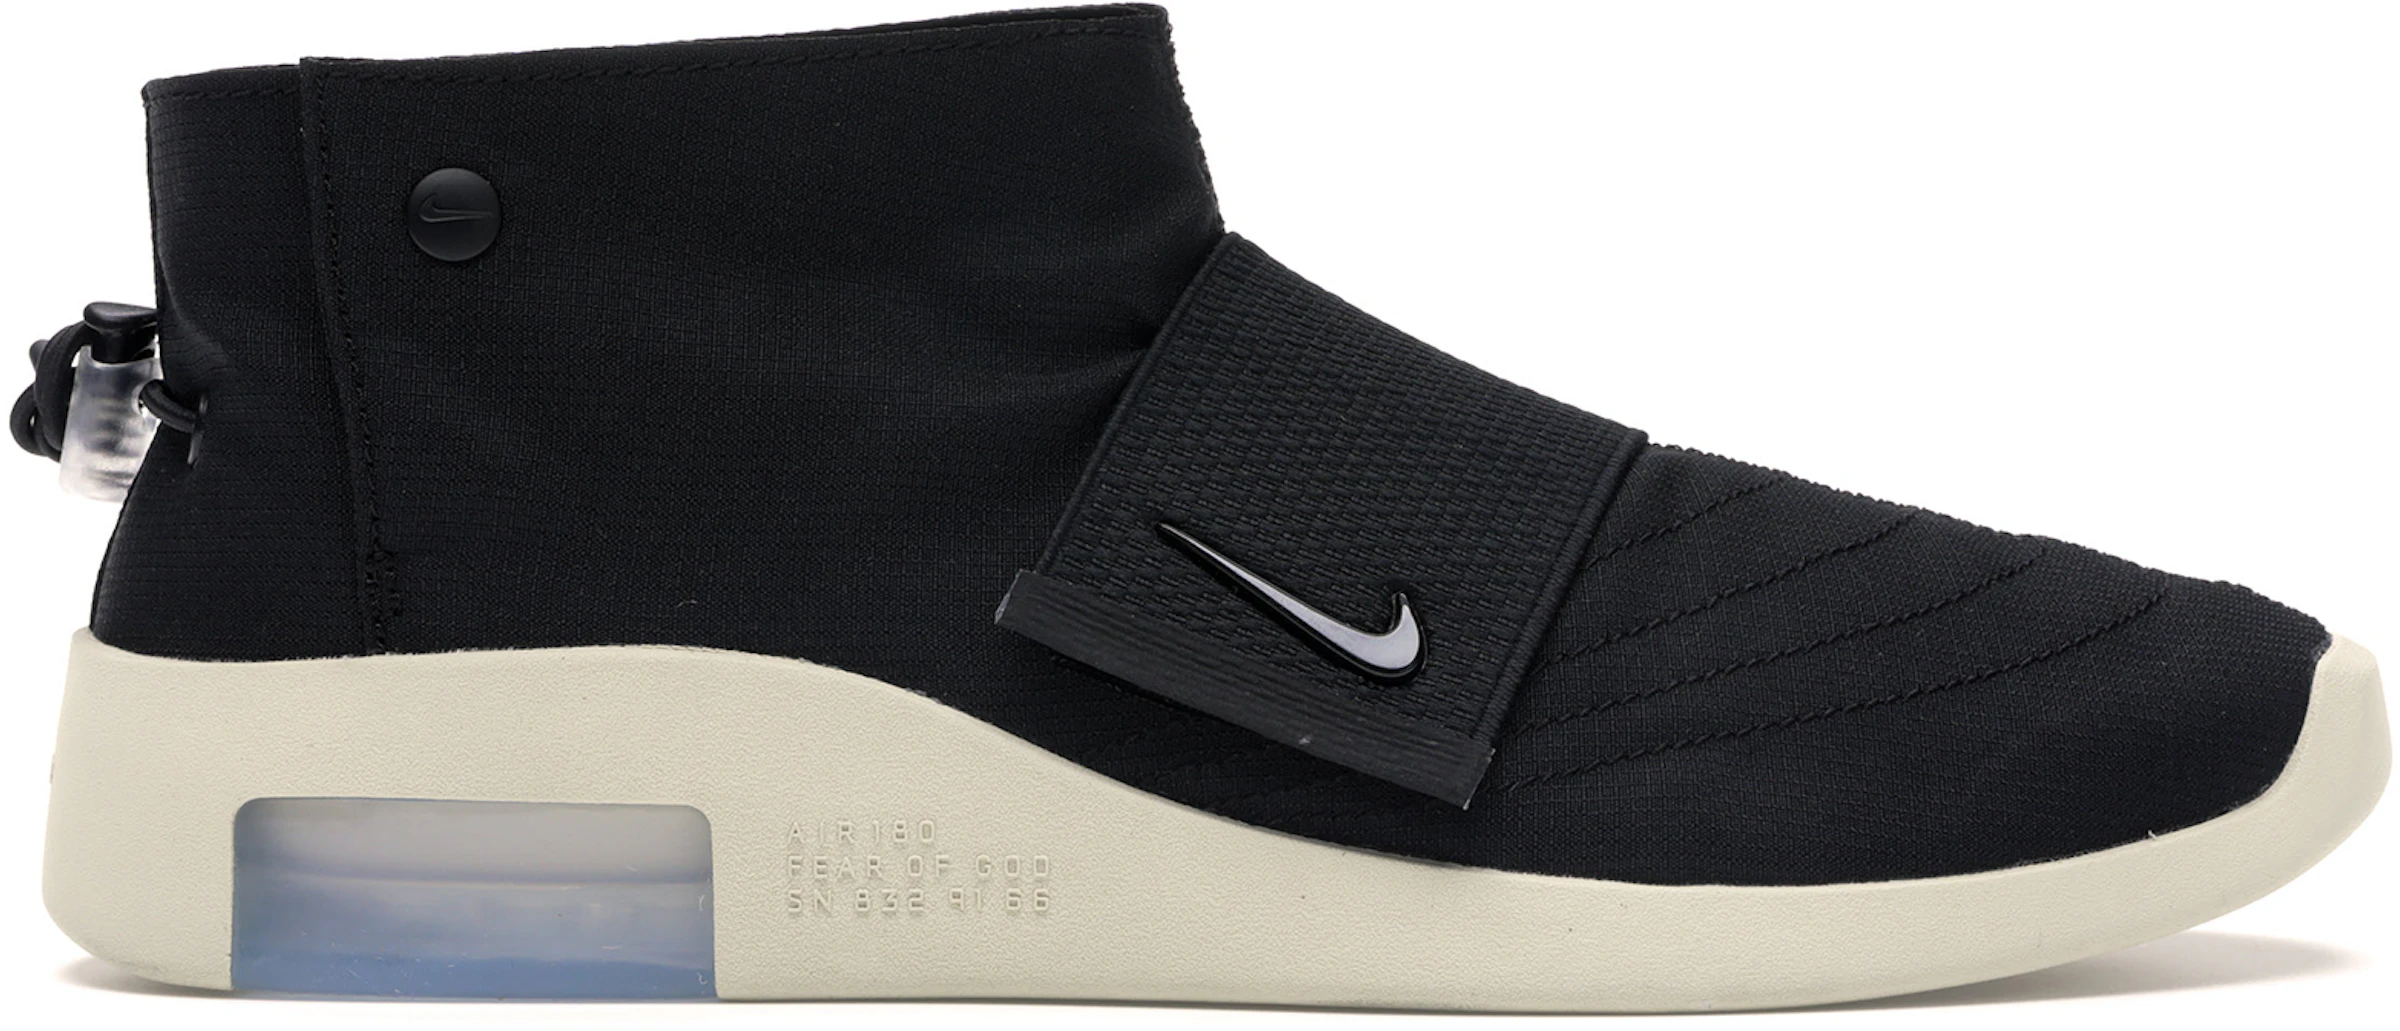 Mutuo límite raro Compra Nike Fear Of God Calzado y sneakers nuevos - StockX